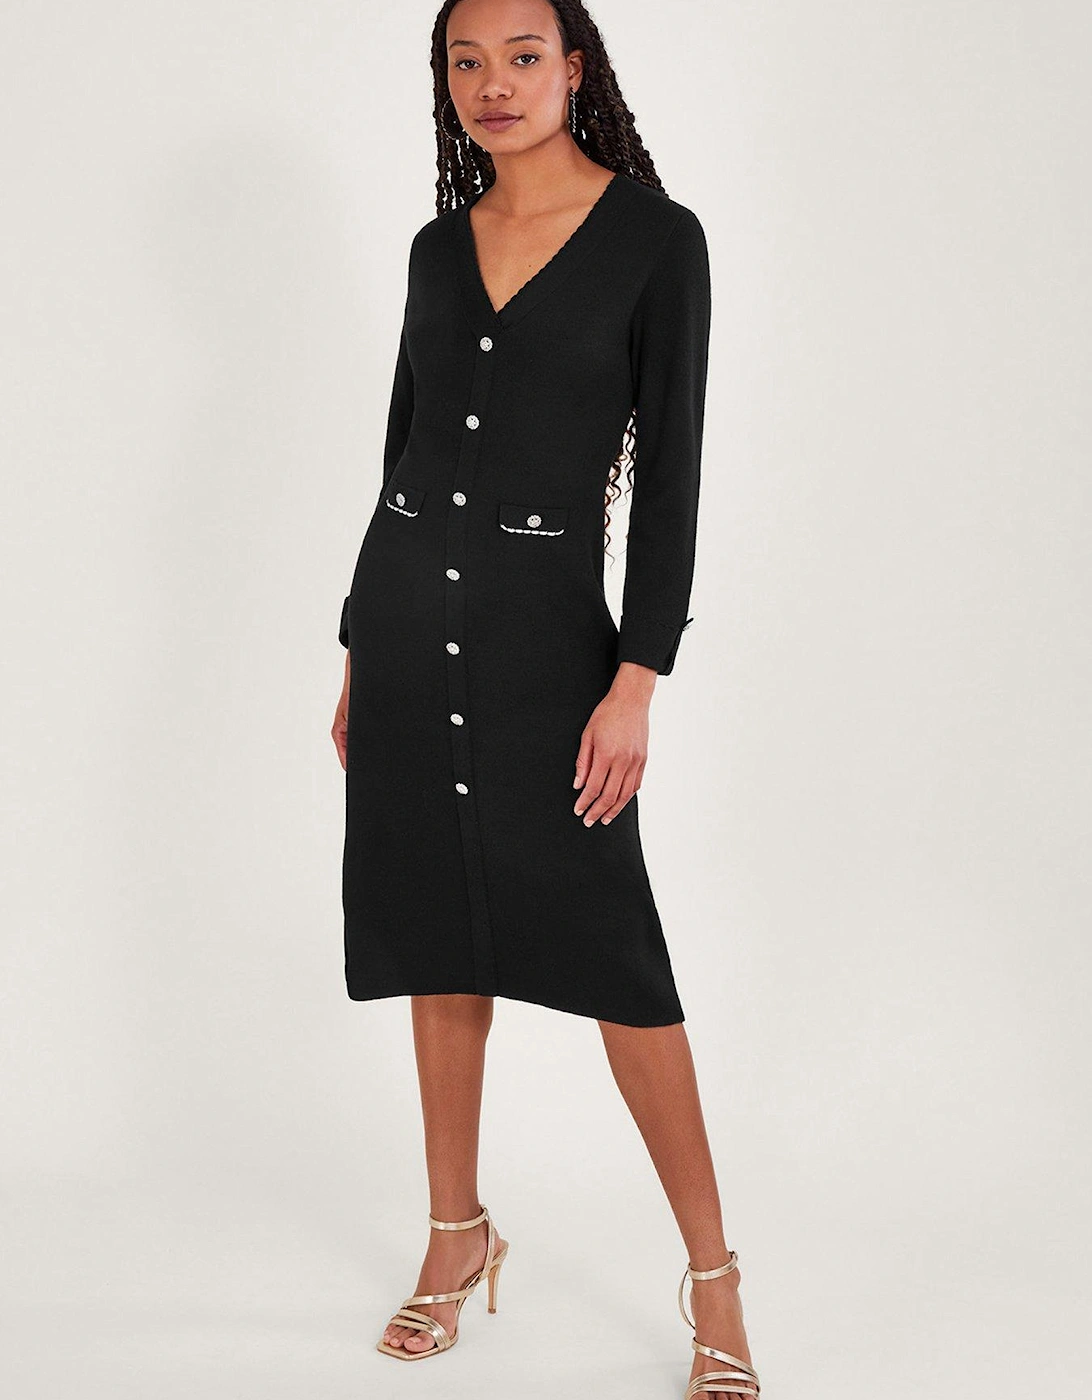 Pocket Detail Dress - Black, 2 of 1